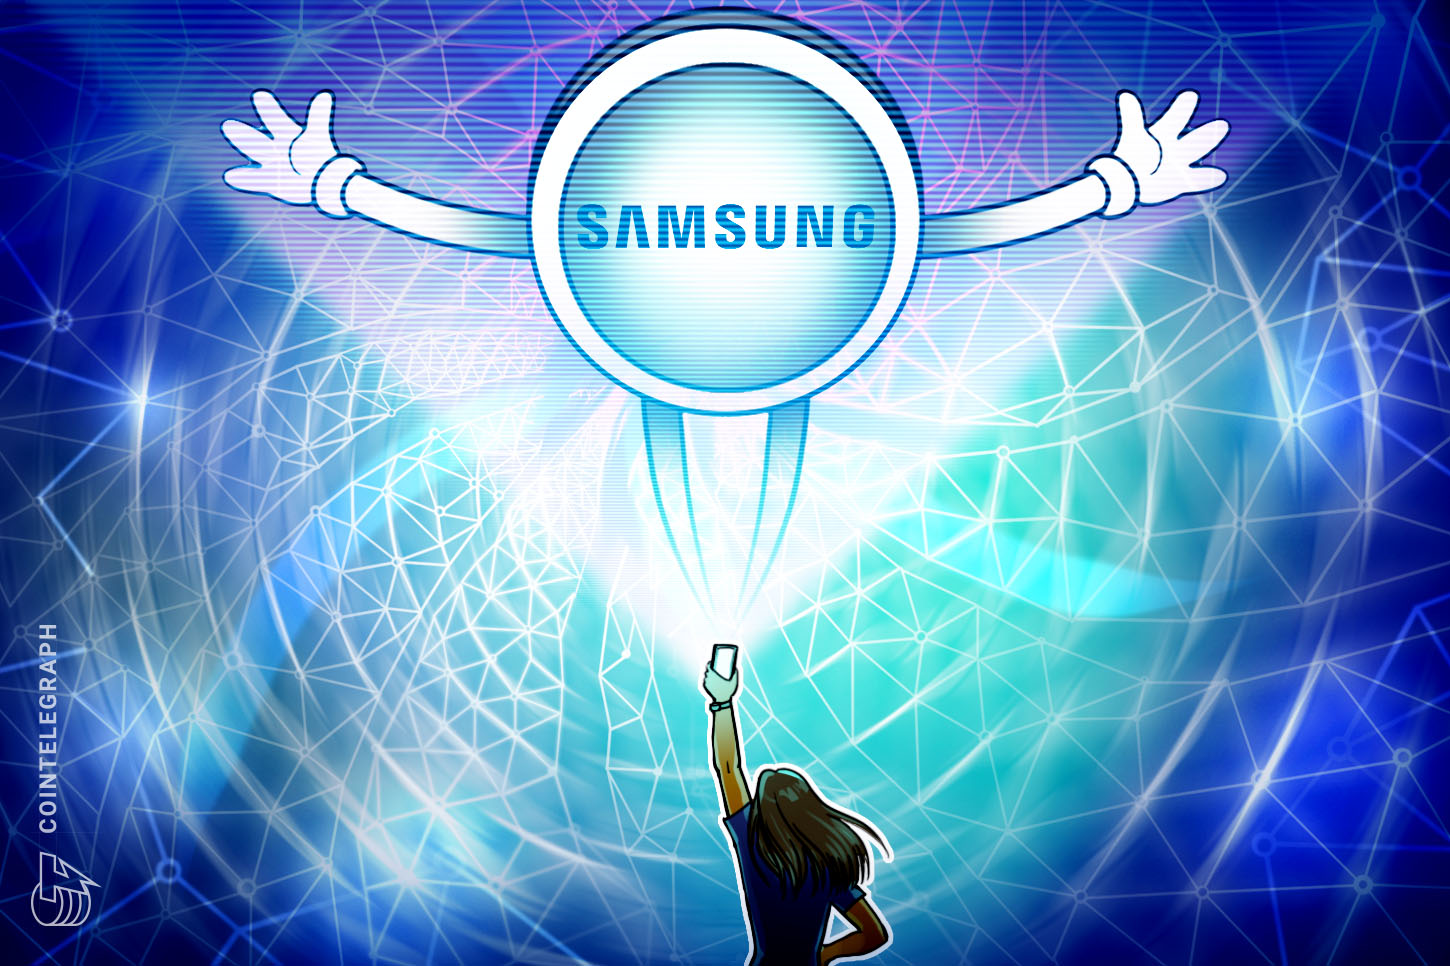 Samsung đang nghiên cứu các hình thức mới của điện thoại với trí tuệ nhân tạo: Bản báo cáo